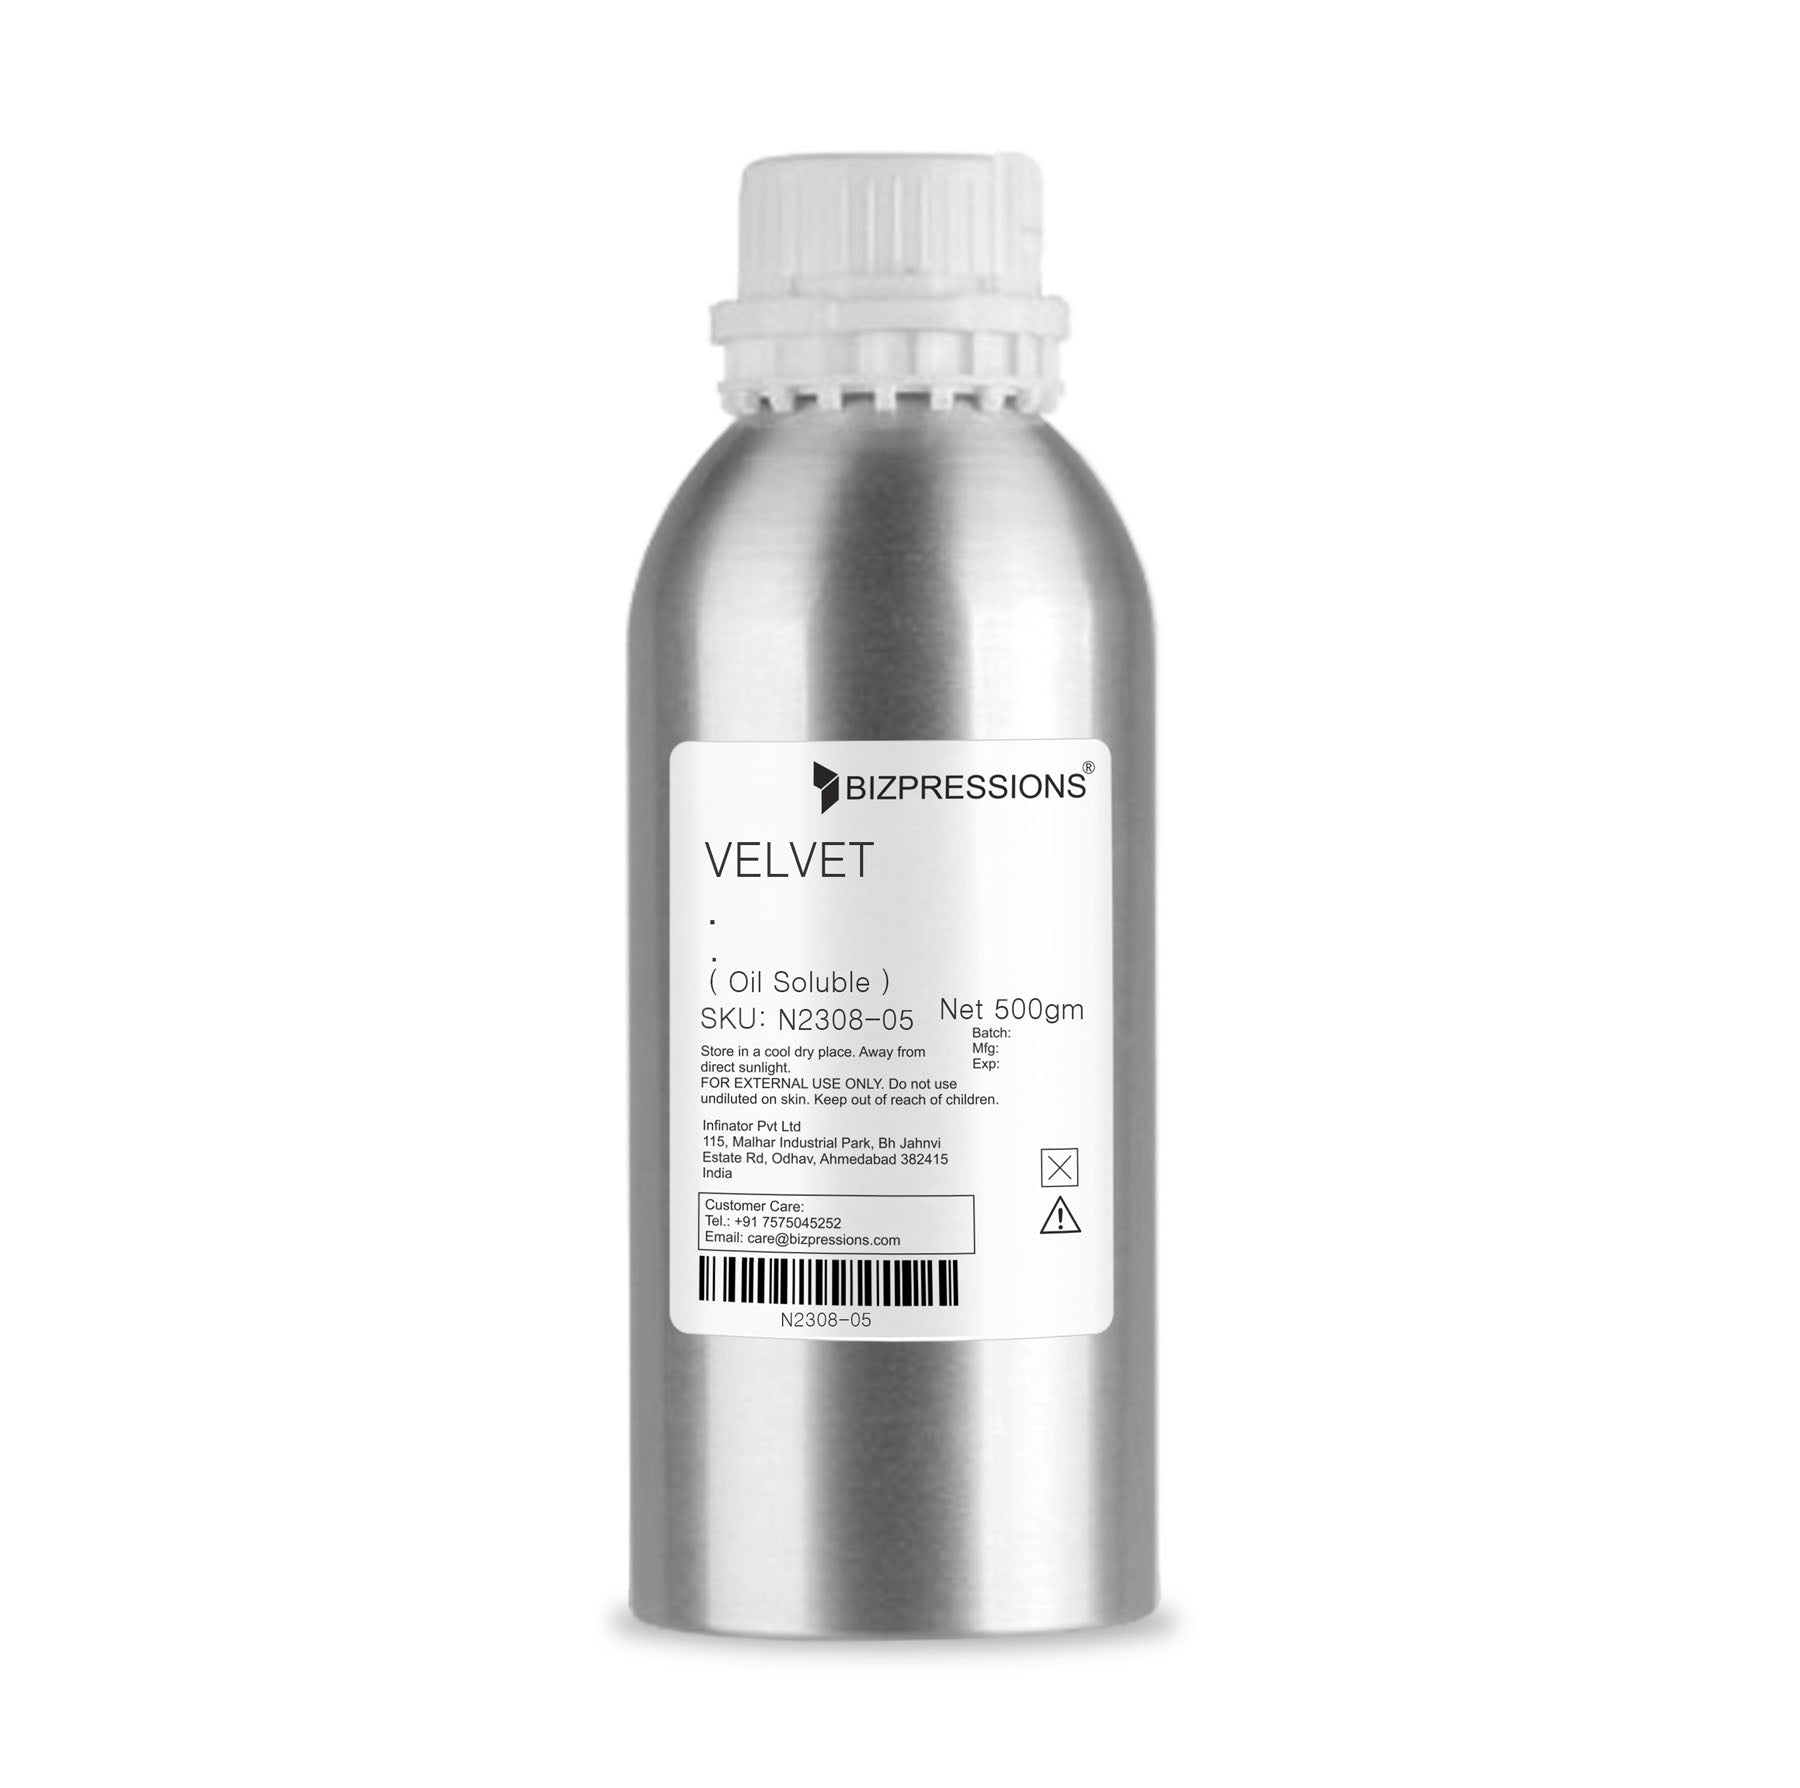 VELVET - Fragrance ( Oil Soluble ) - 500 gm